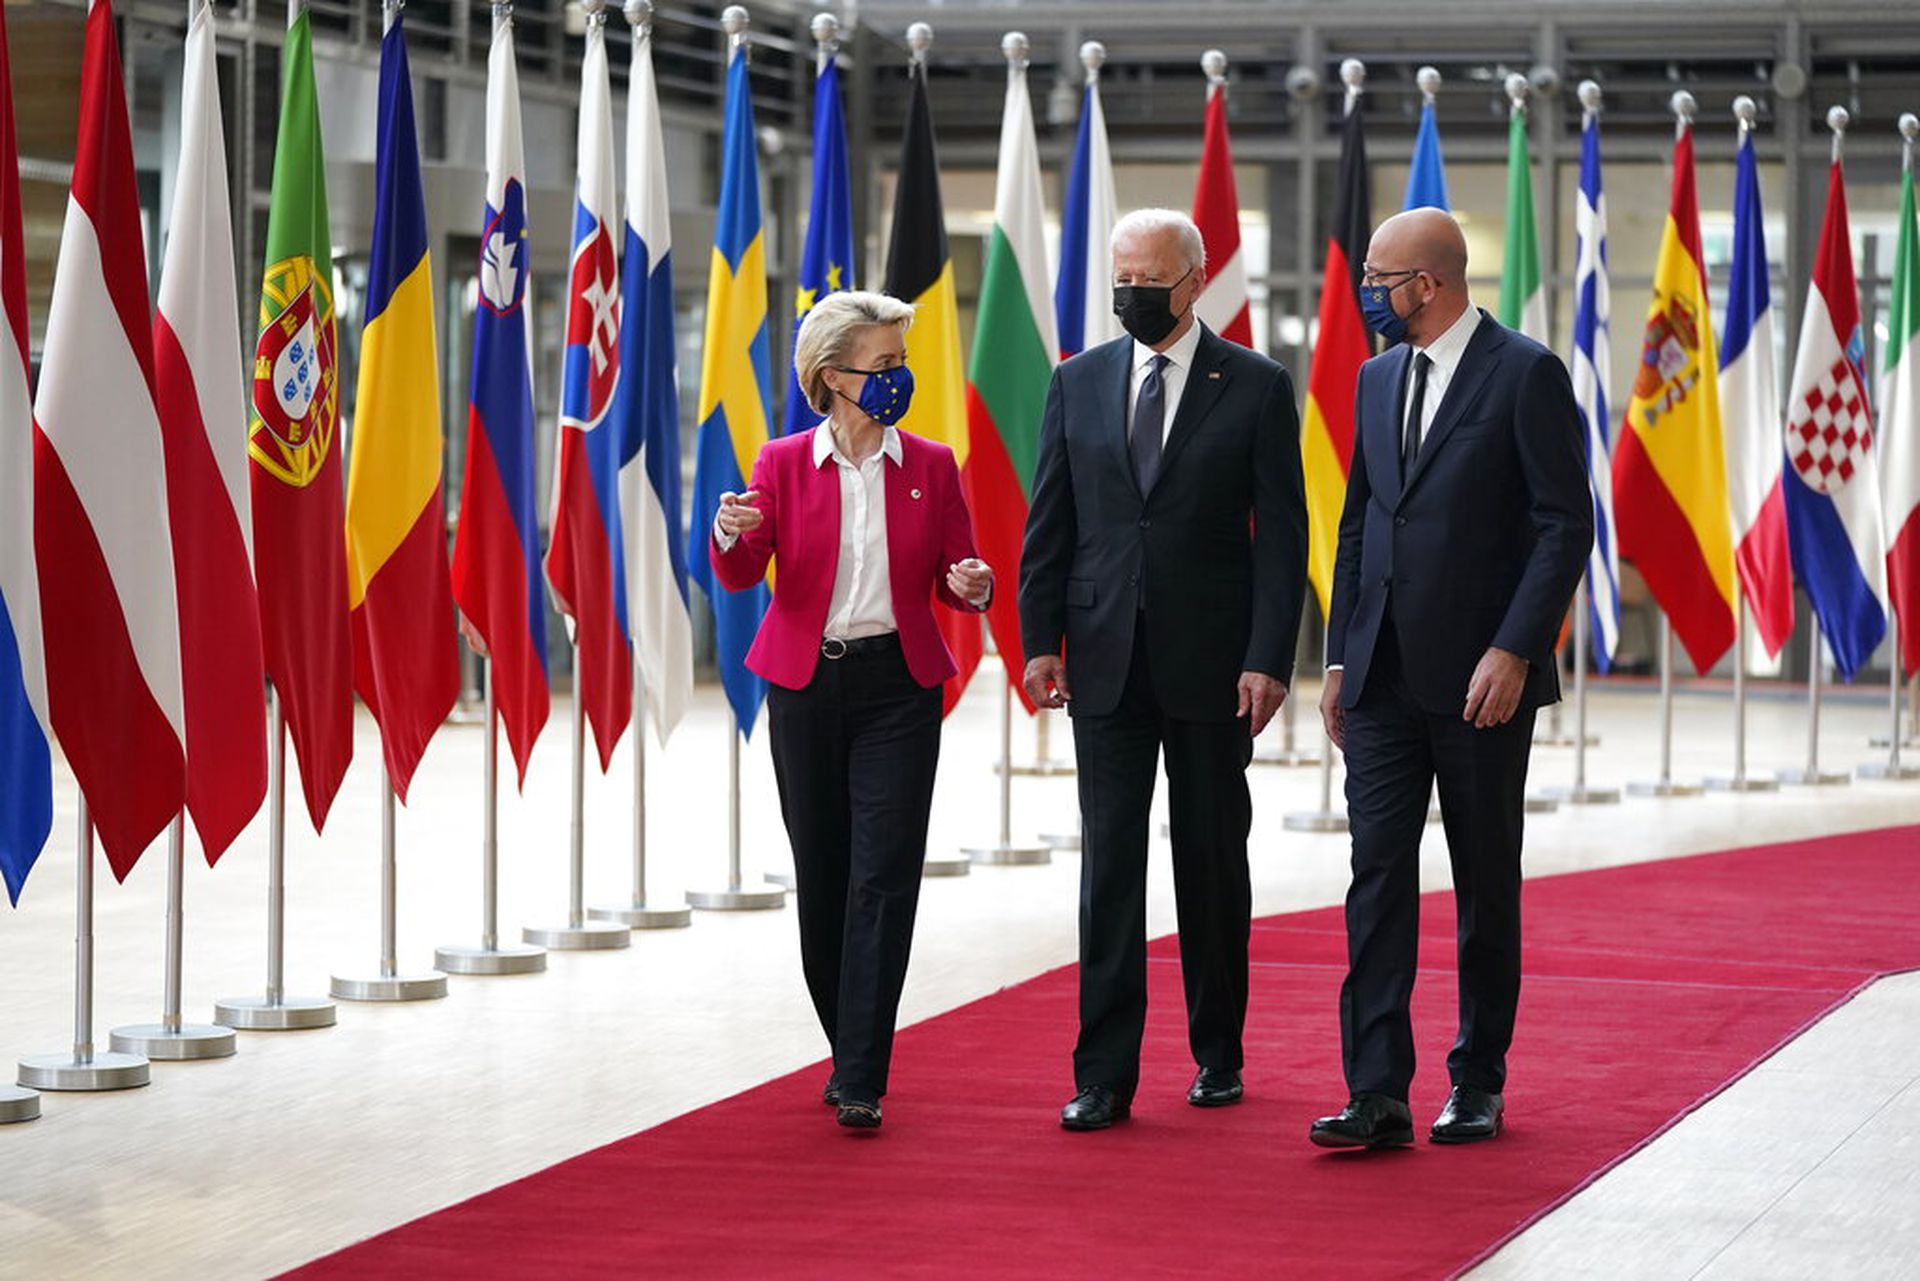 2021年6月15日星期二，在布鲁塞尔举行的欧洲理事会美国-欧盟峰会上，美国总统拜登(中)与欧洲理事会主席米歇尔(右)和欧盟委员会主席乌苏拉·冯·德莱恩(Ursula von der Leyen)一起散步。(AP Photo/Patrick Semansky)